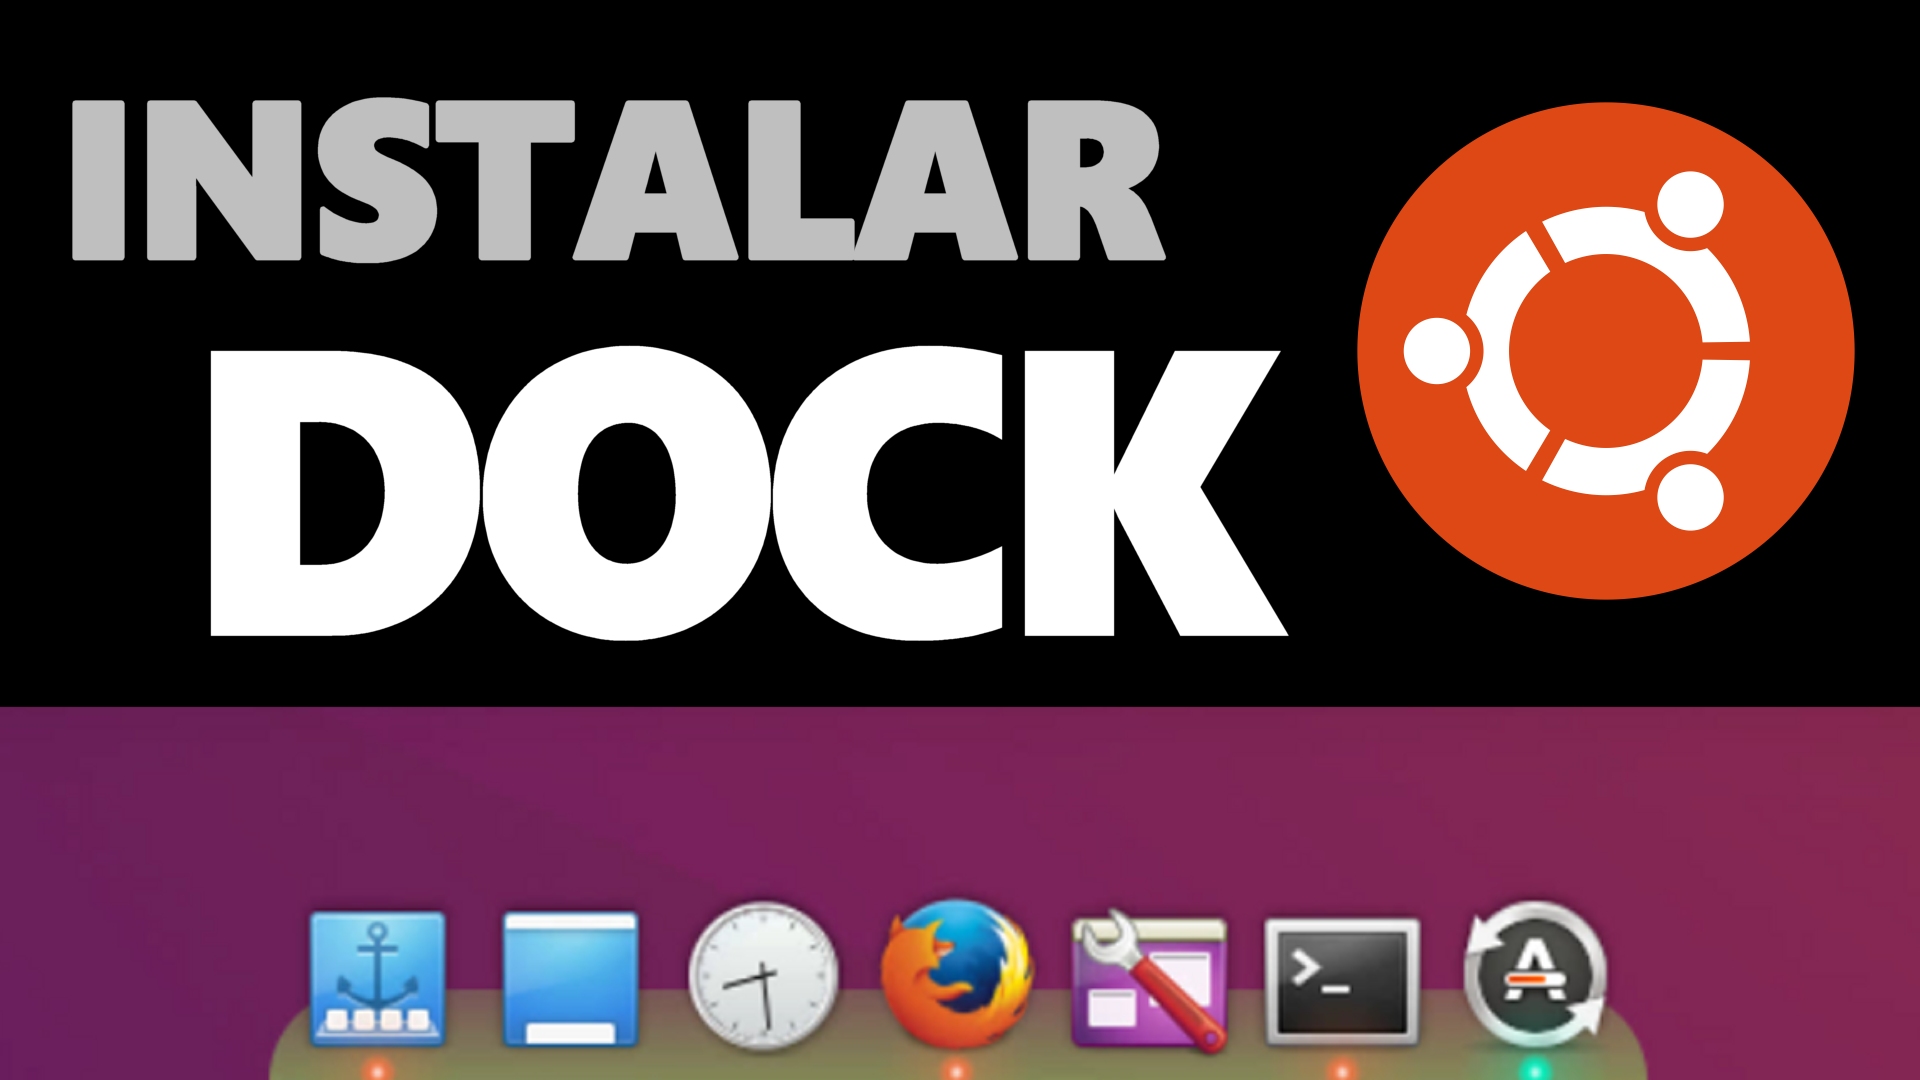 Instalar un dock en Ubuntu, al estilo Mac, con Plank